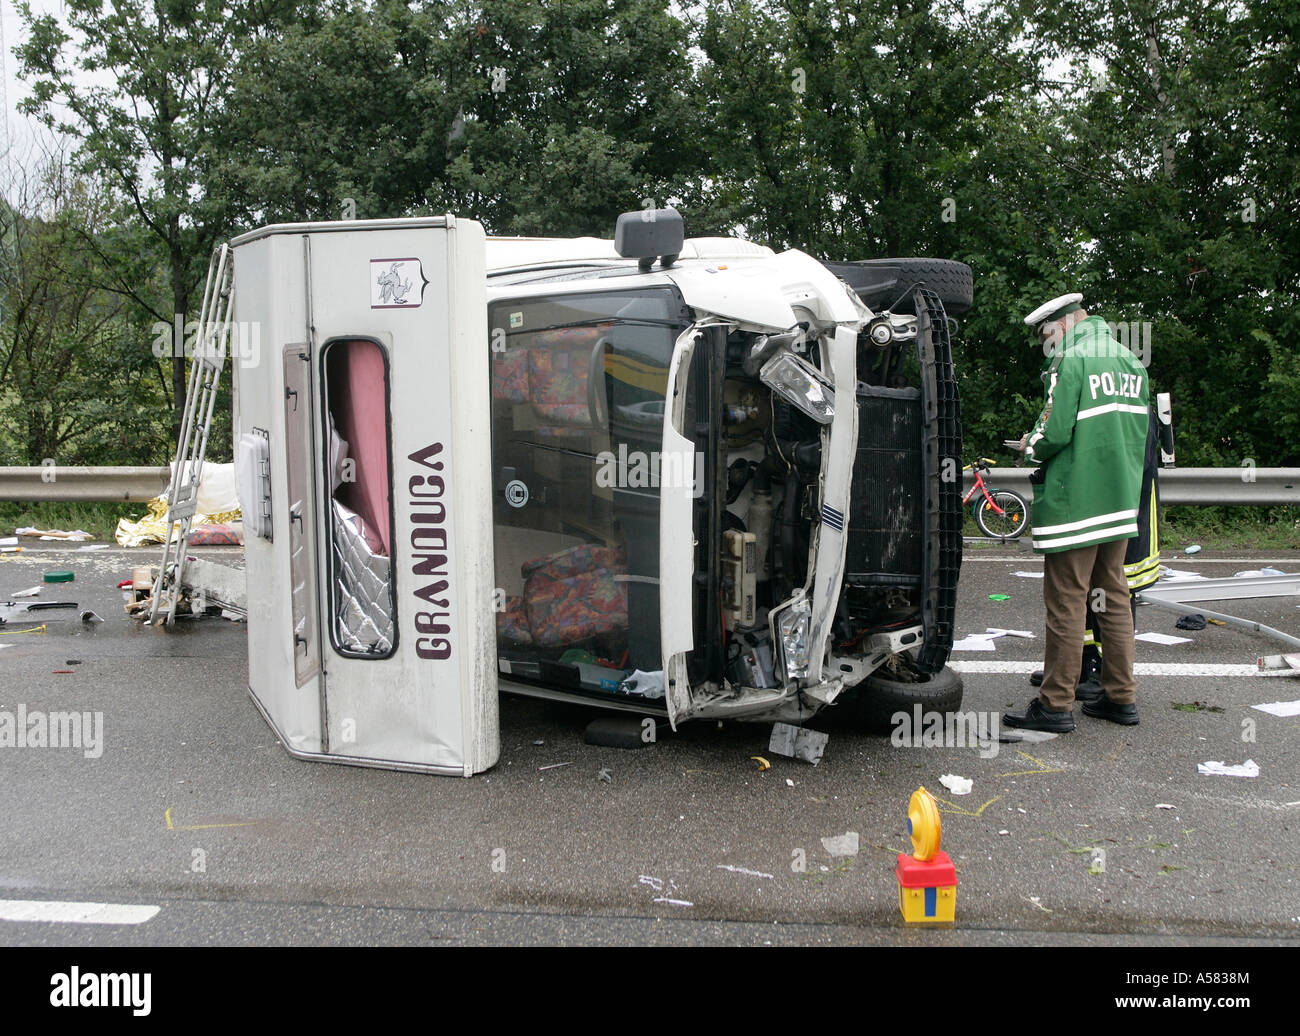 Un camping car ha caído en un accidente Foto de stock